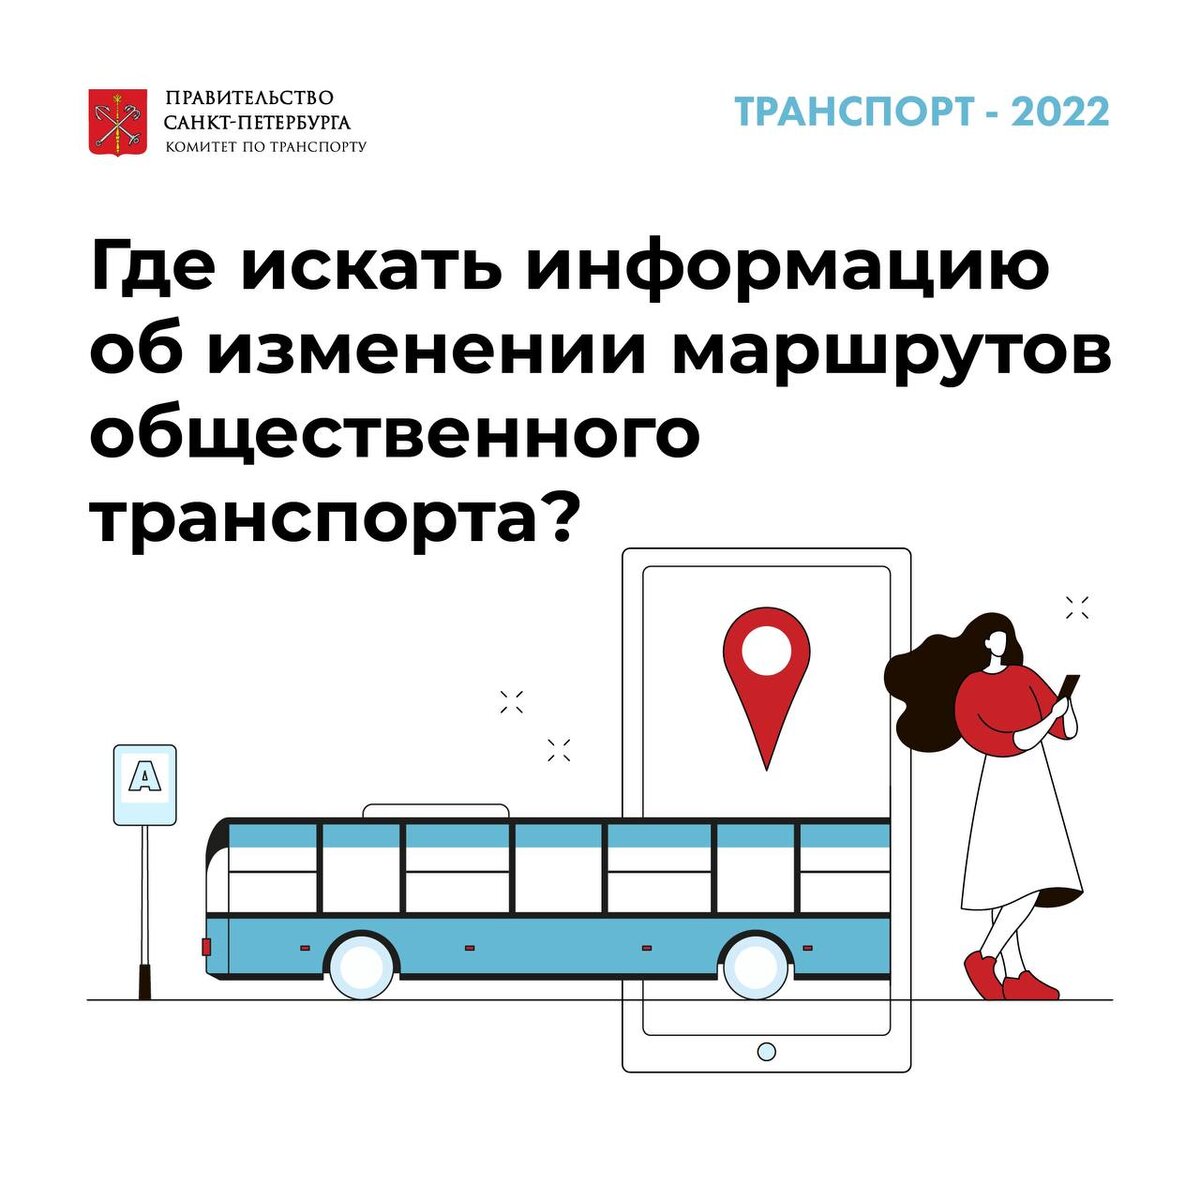 Изменение транспорта спб. Изменения маршрутов транспорта СПБ. Транспорт СПБ 2022. Новая модель транспортного обслуживания. Транспорт СПБ 2022 автобусы.